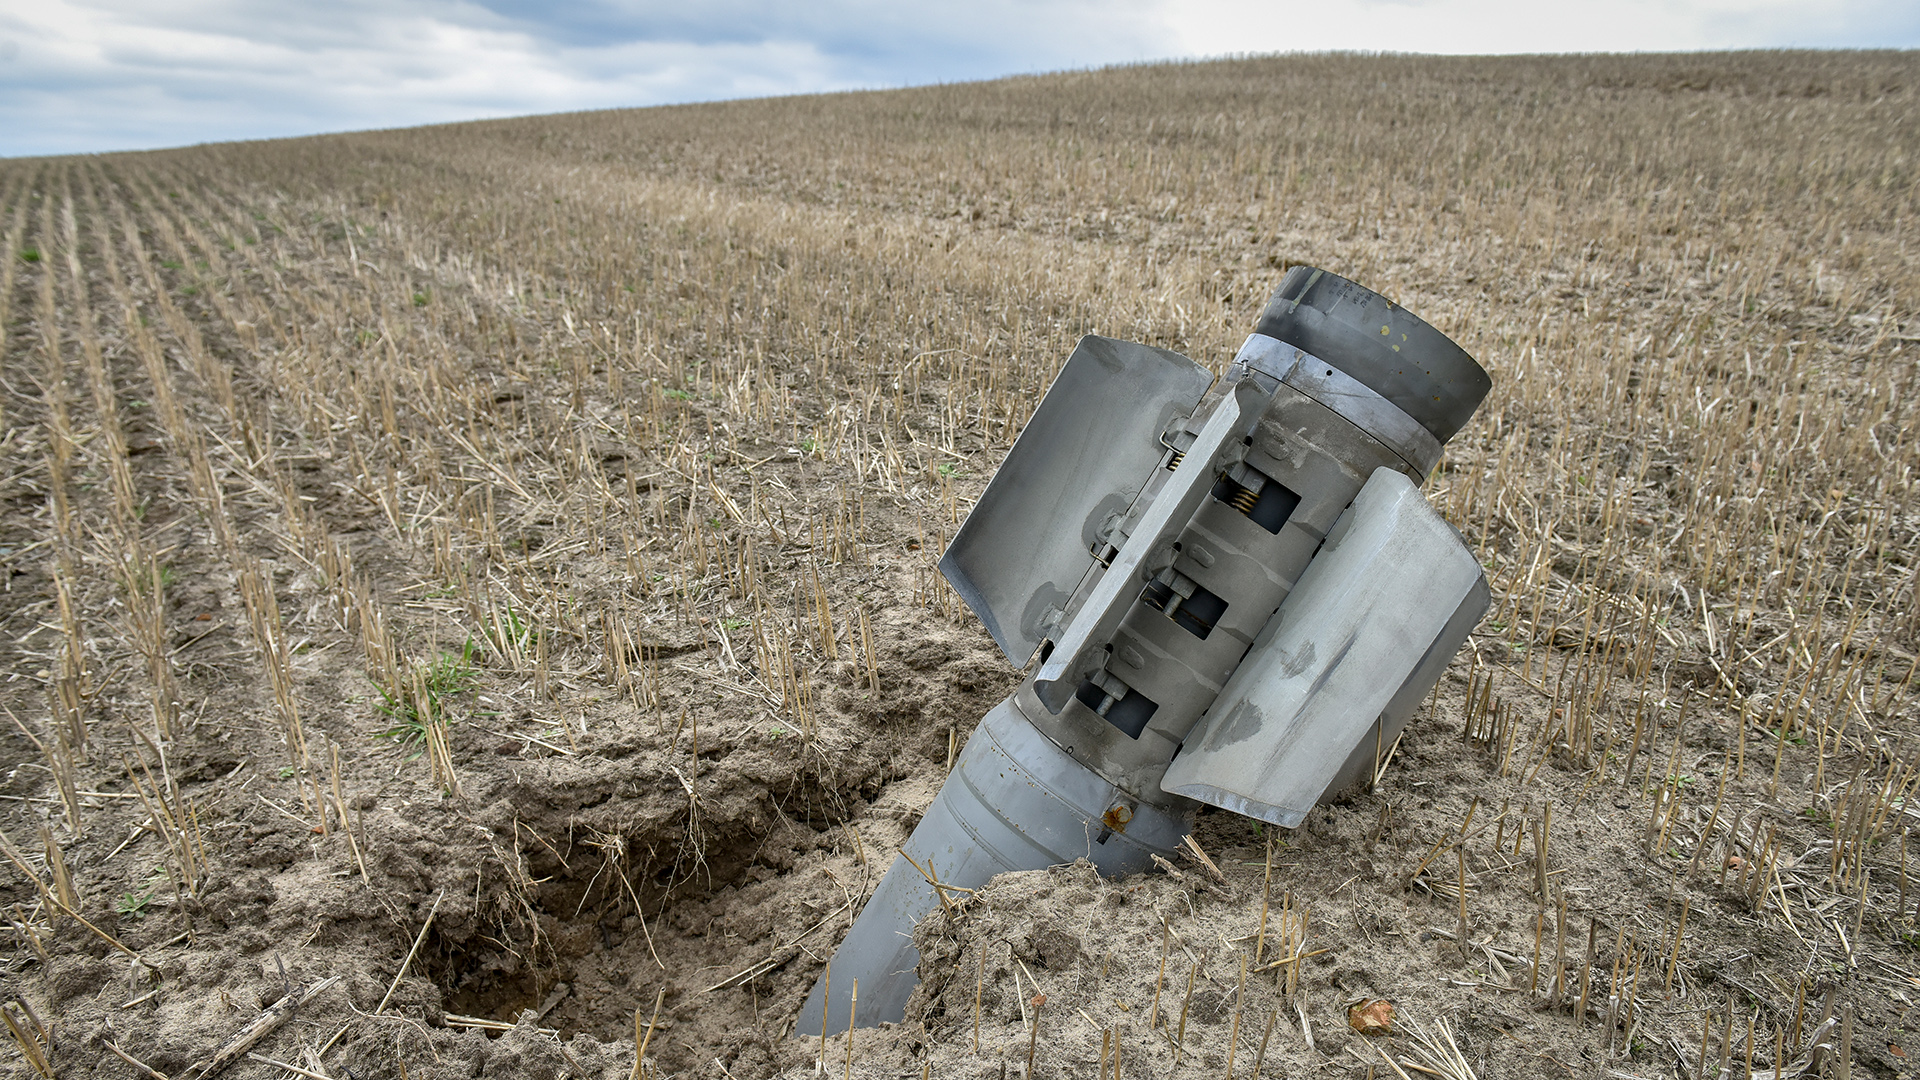 Trümmer einer Rakete auf einem Feld in der Nähe von Kiew, Ukraine. | EPA